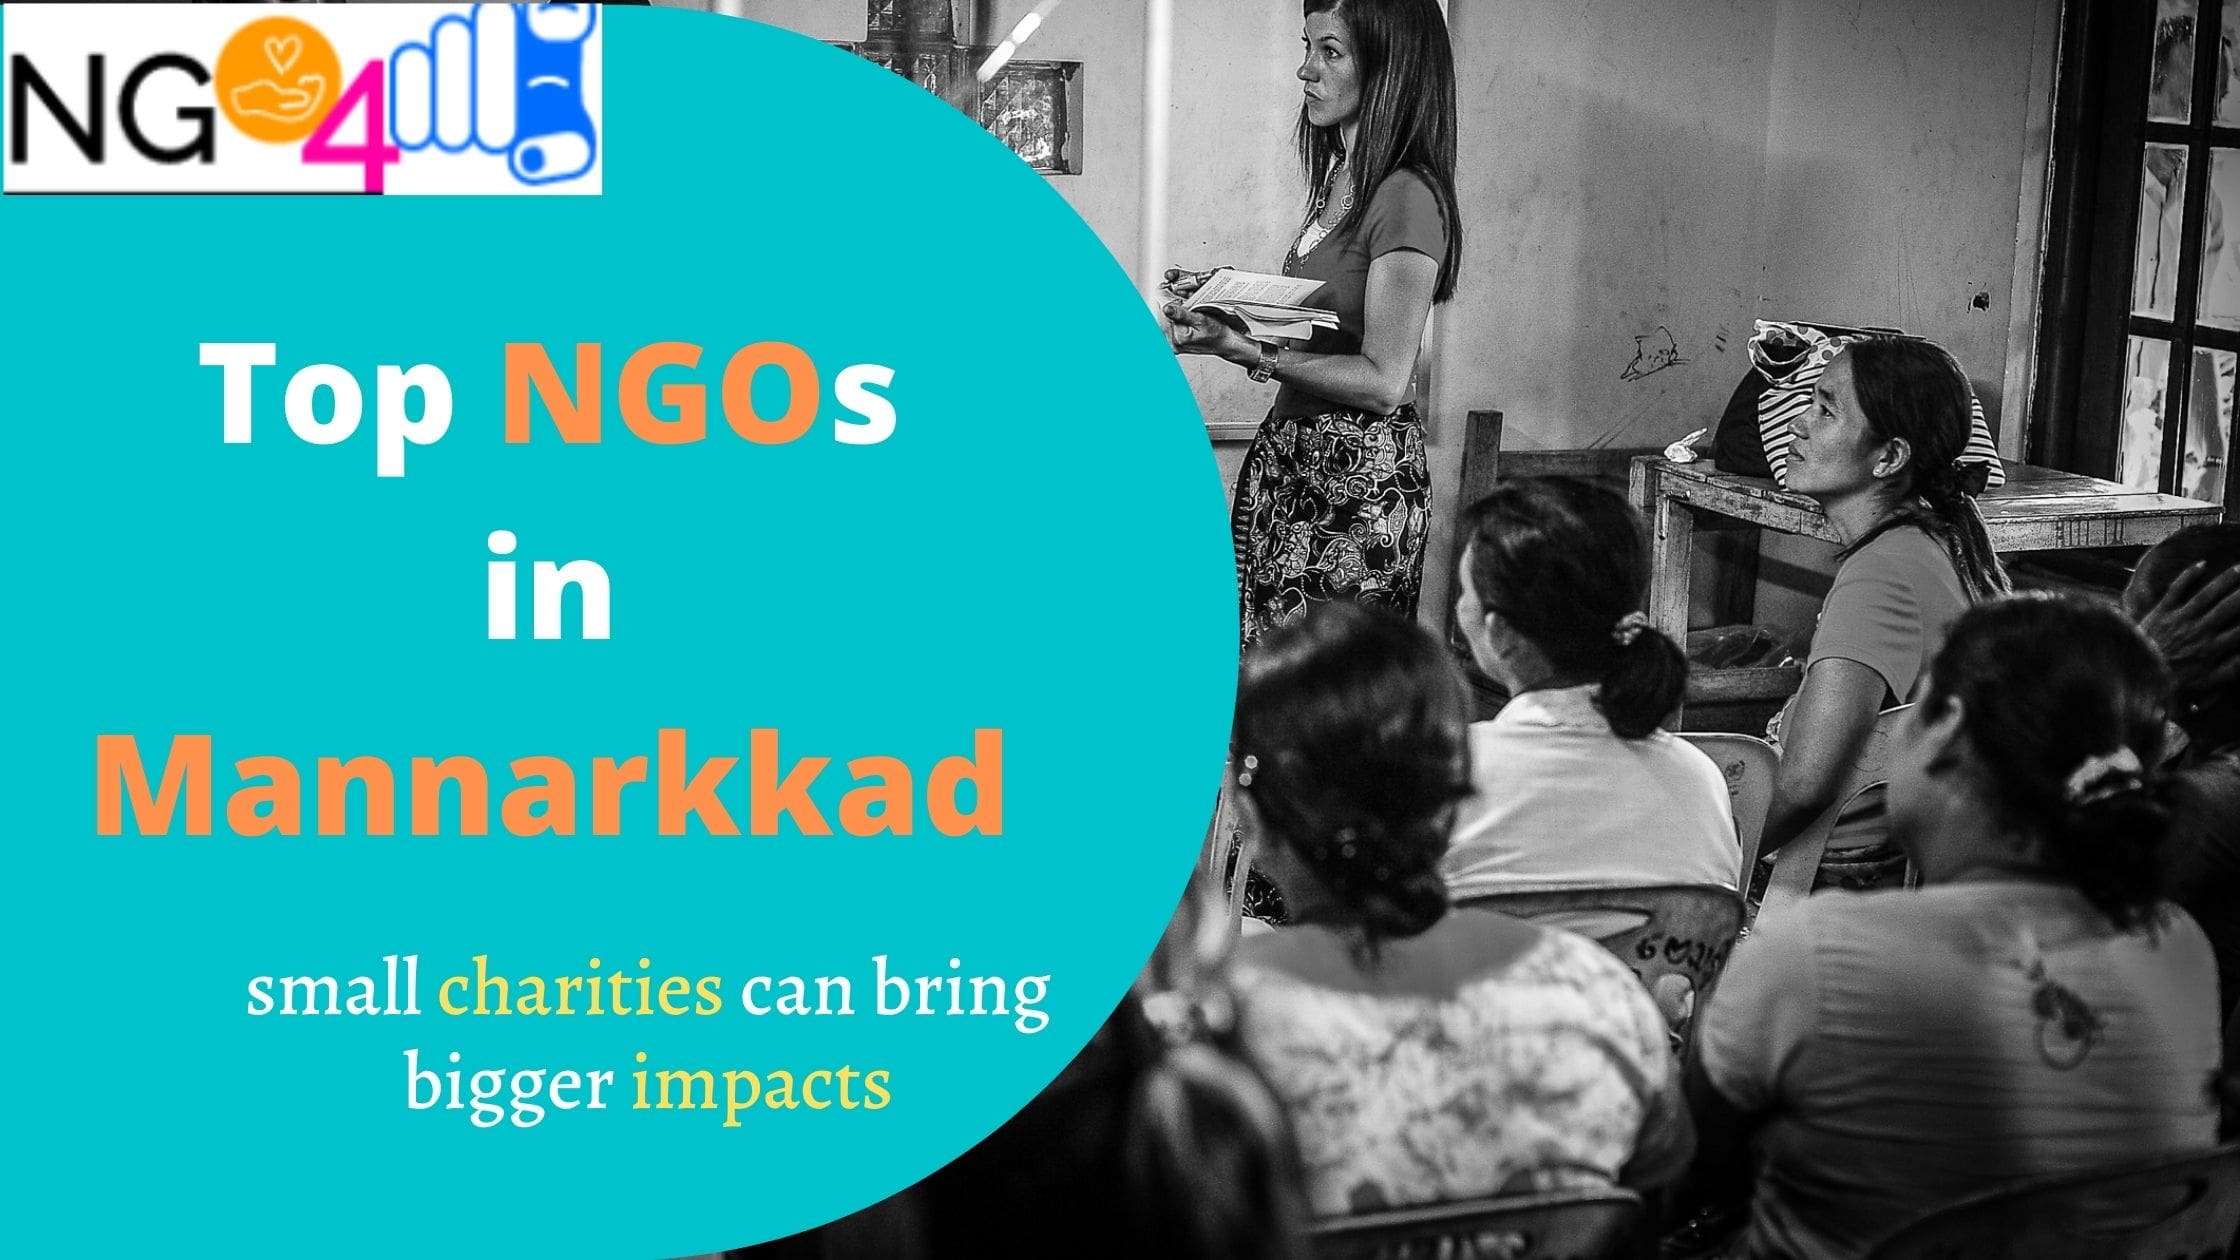 NGO in Mannarkkad